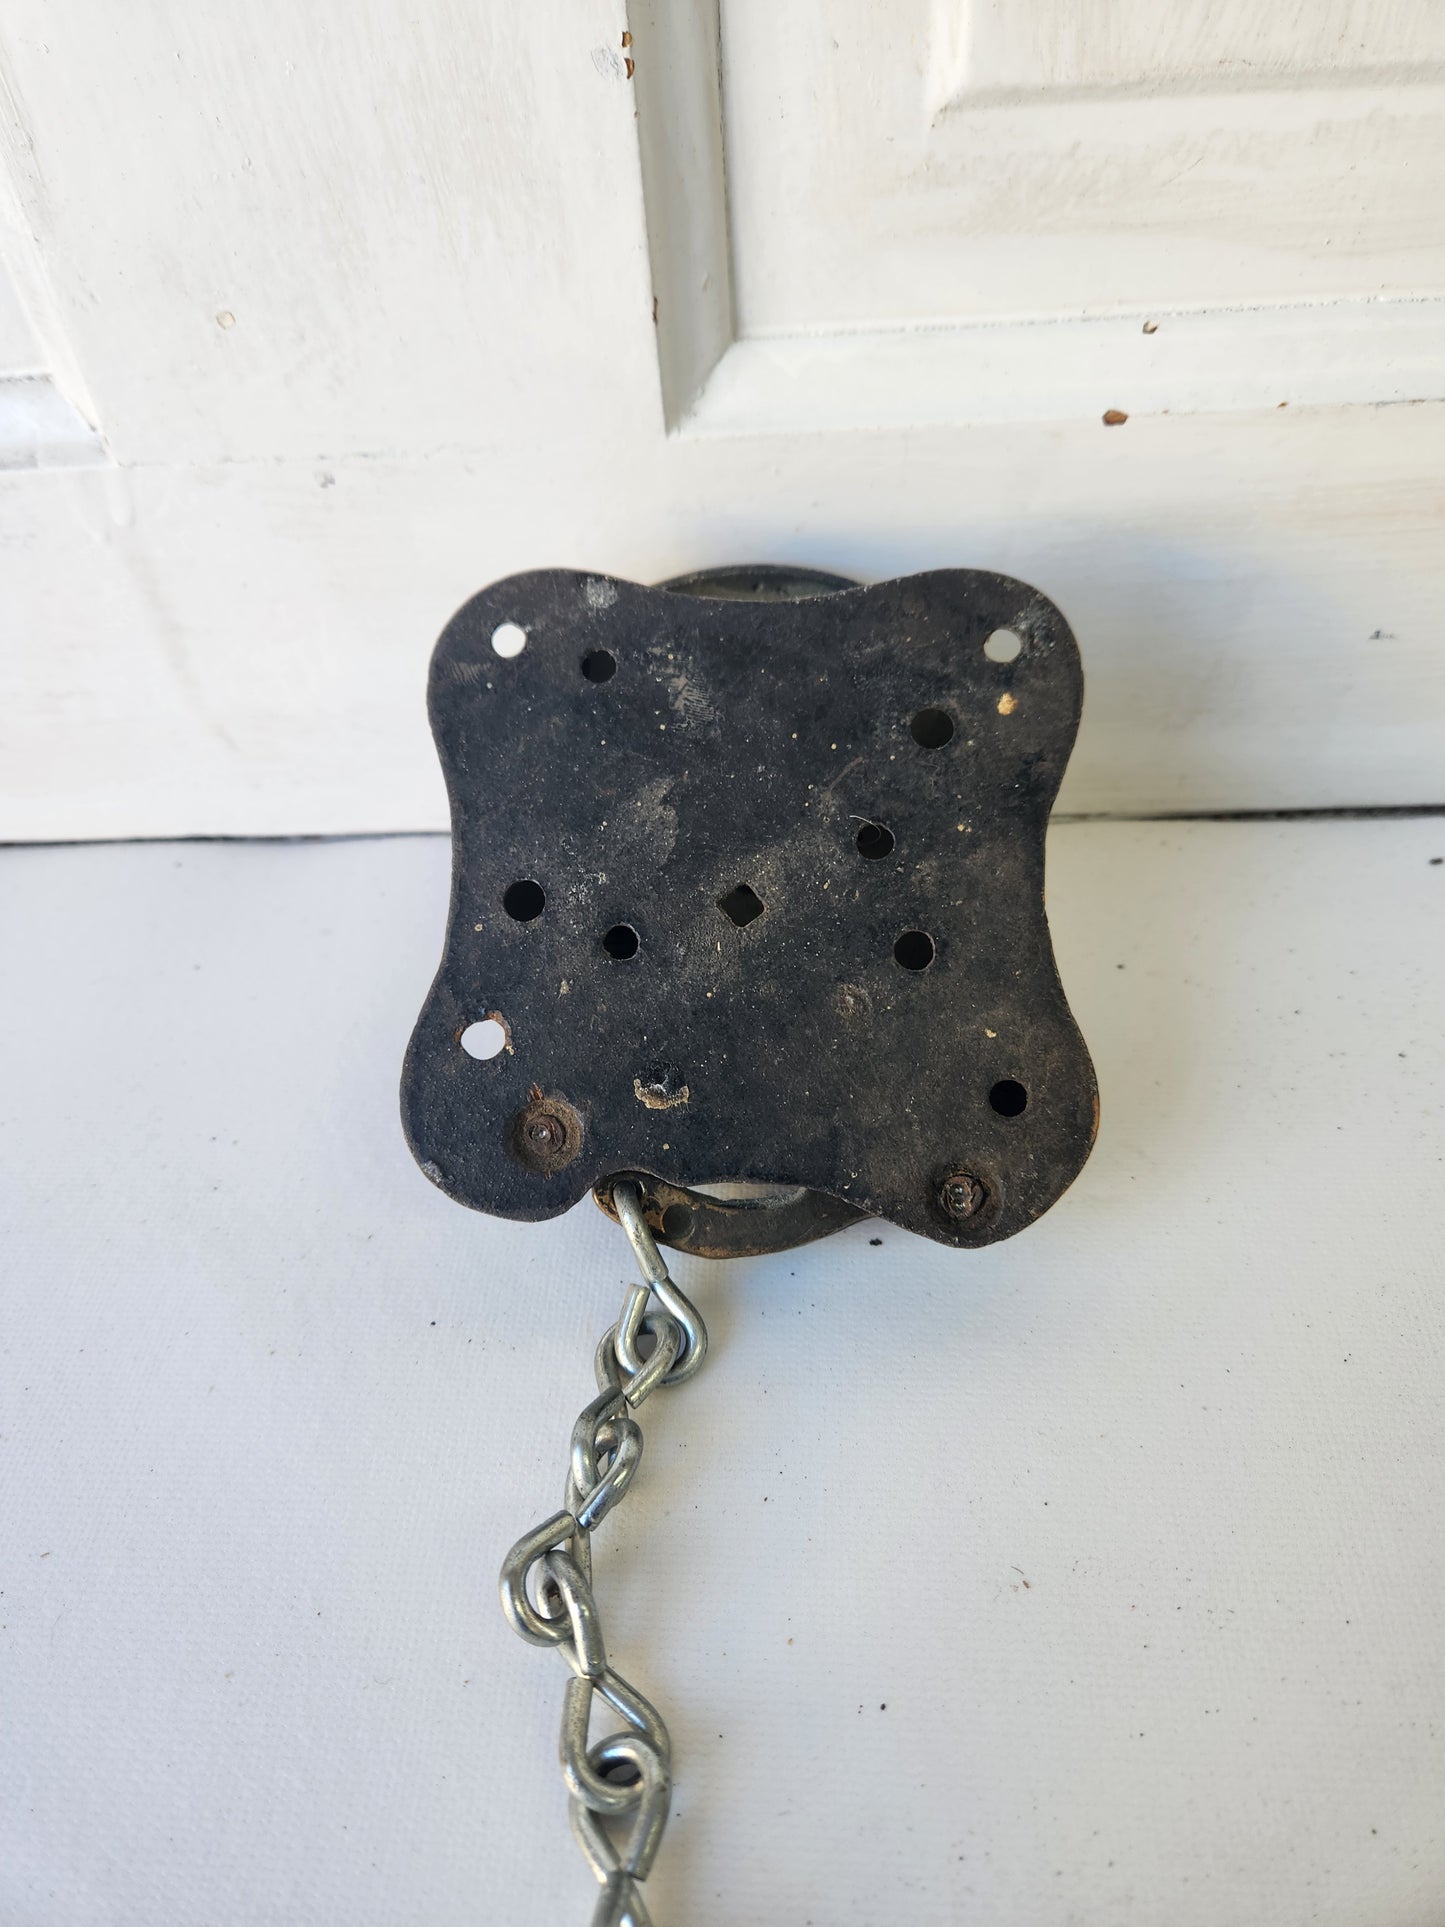 Antique Mechanical Doorbell, Victorian Era Pull Chain Style Door Bell 011104